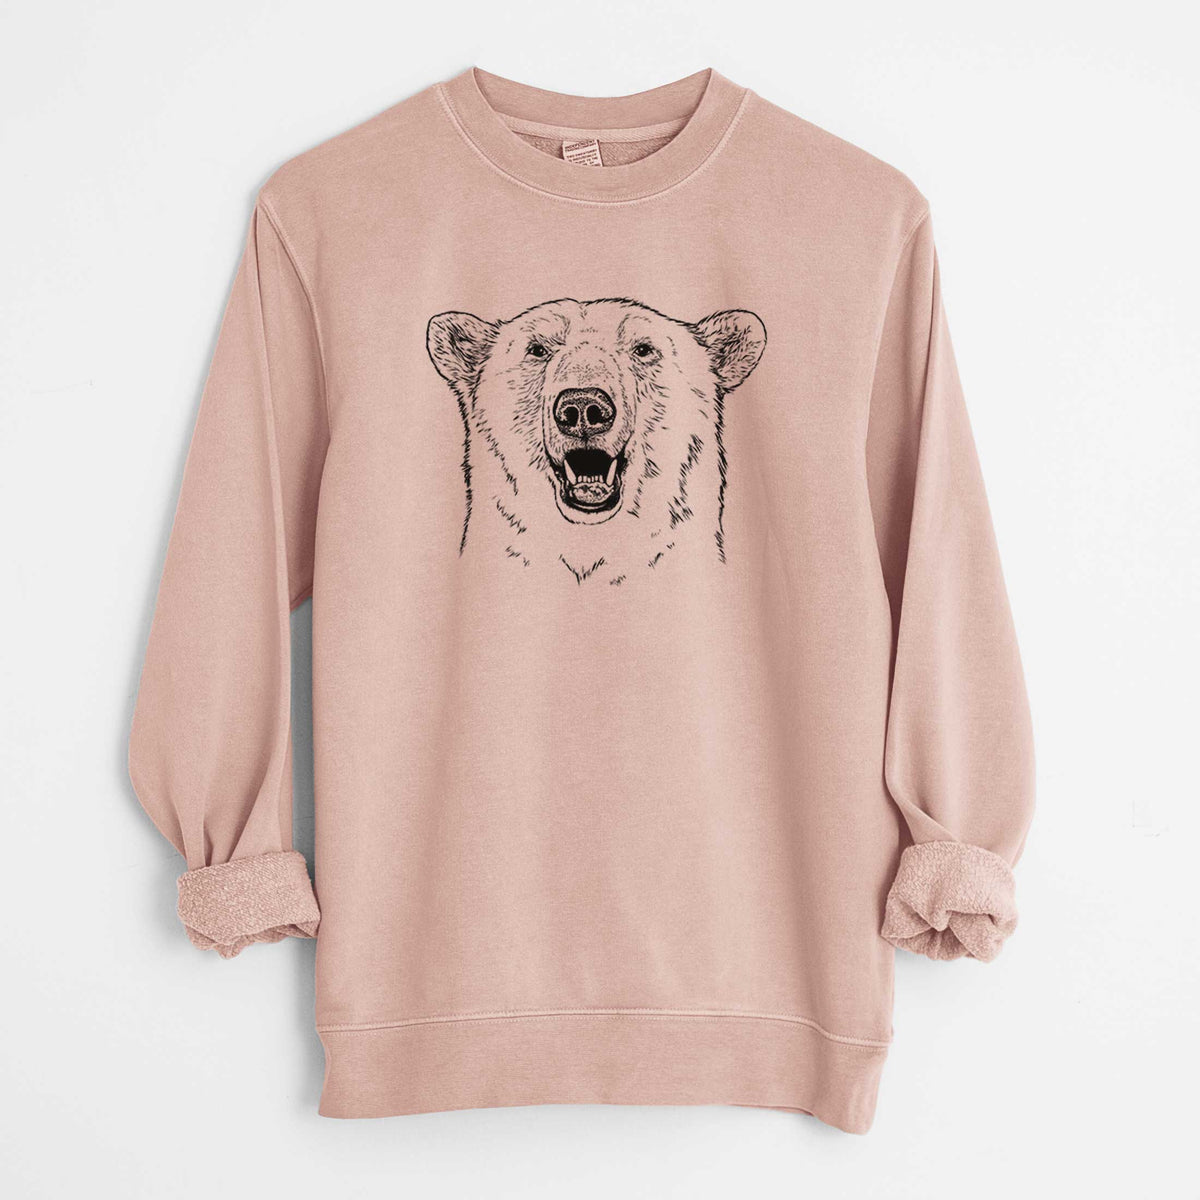 Ursus Maritimus - Polar Bear - Unisex Pigment Dyed Crew Sweatshirt